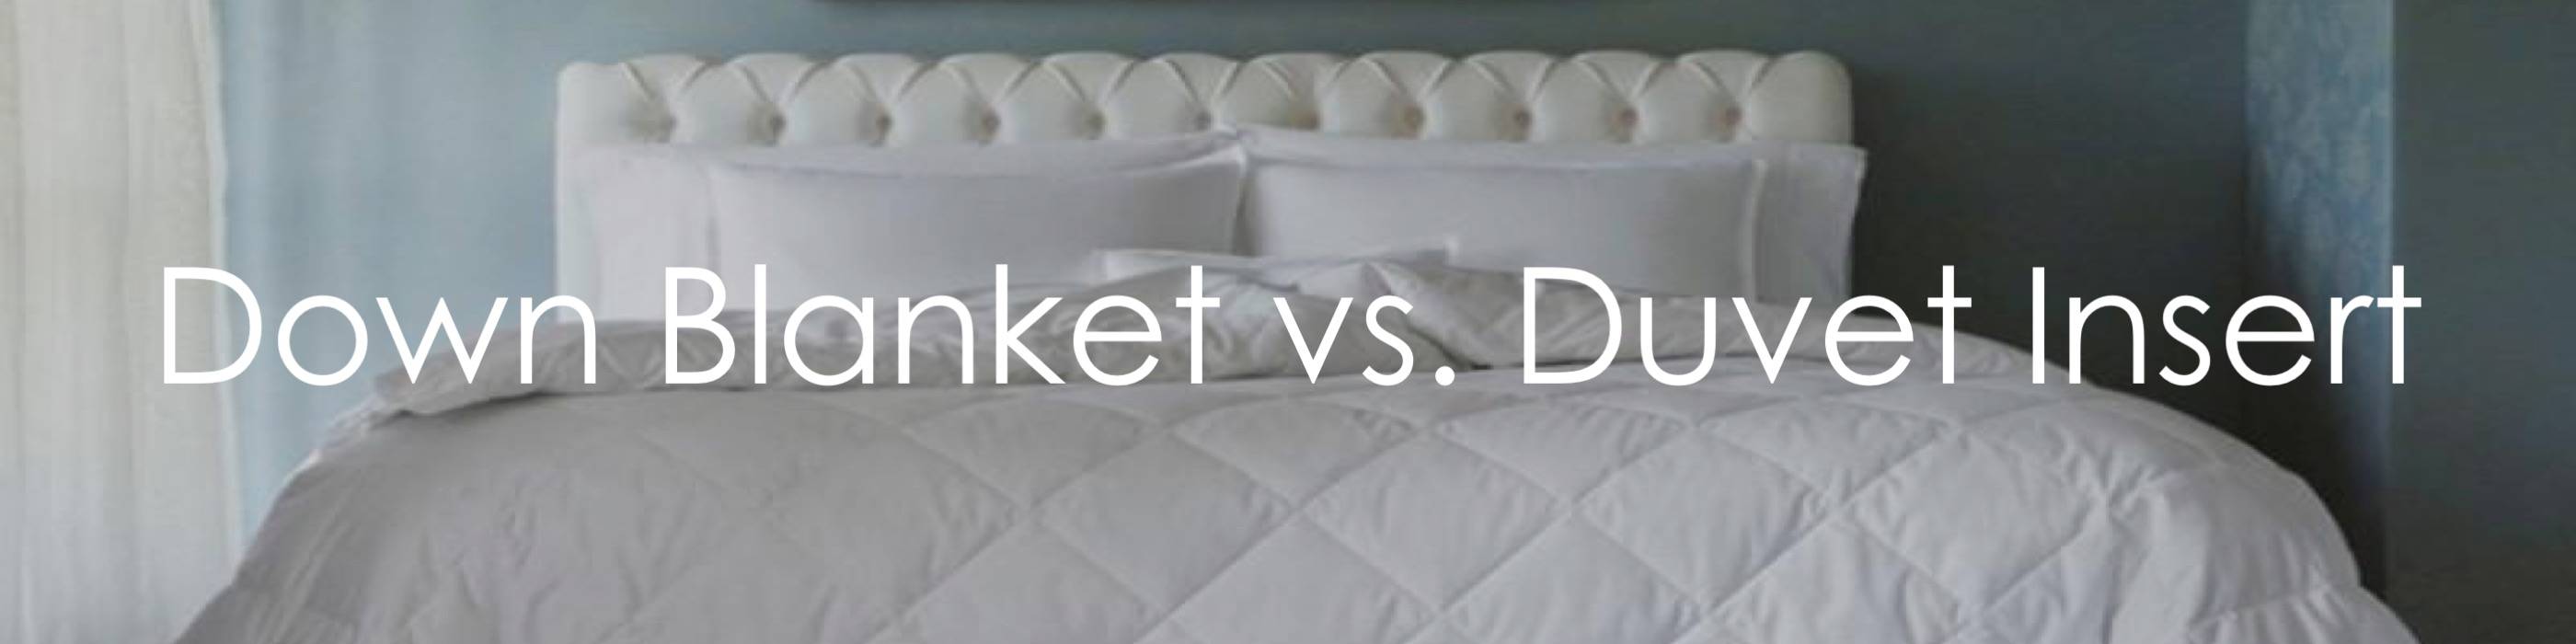 Down Blanket Cover Vs Duvet Insert, Can You Put A Duvet Cover On Any Blanket